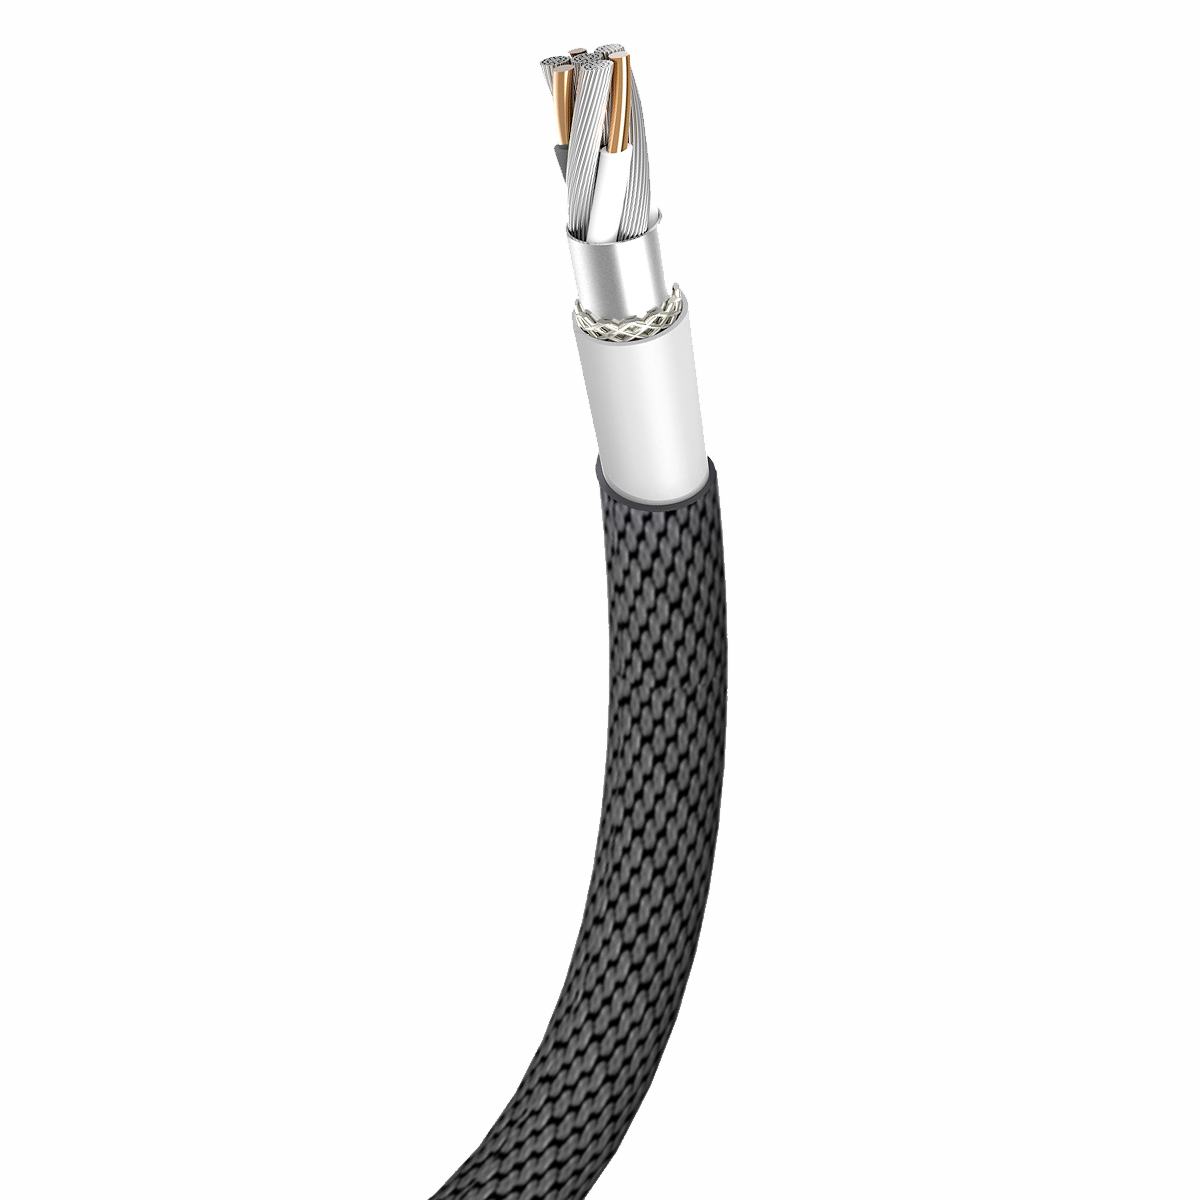 Baseus kabel Yiven (8-pin | 1,2 m) czarny 2A / 3